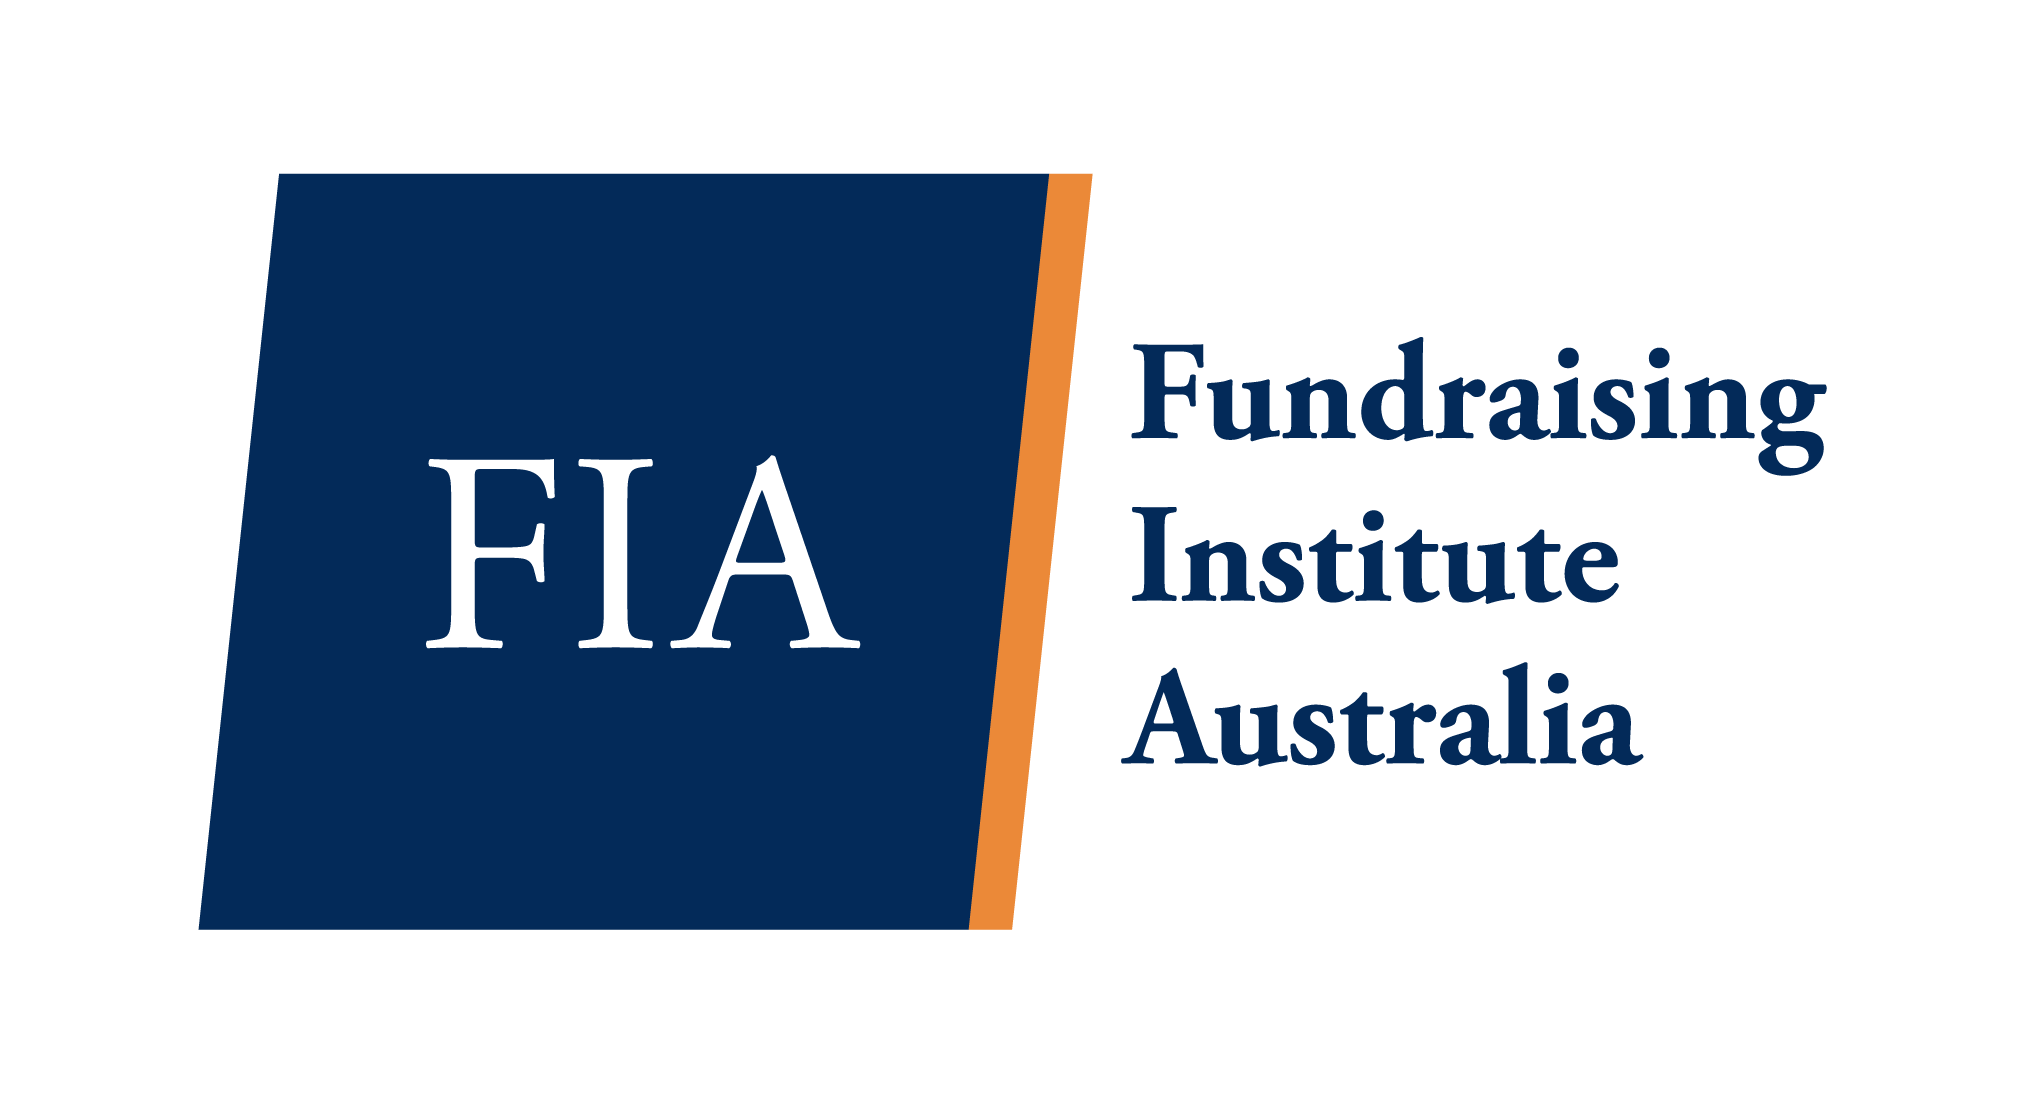 FIA Fundraising Institute Australia Logo